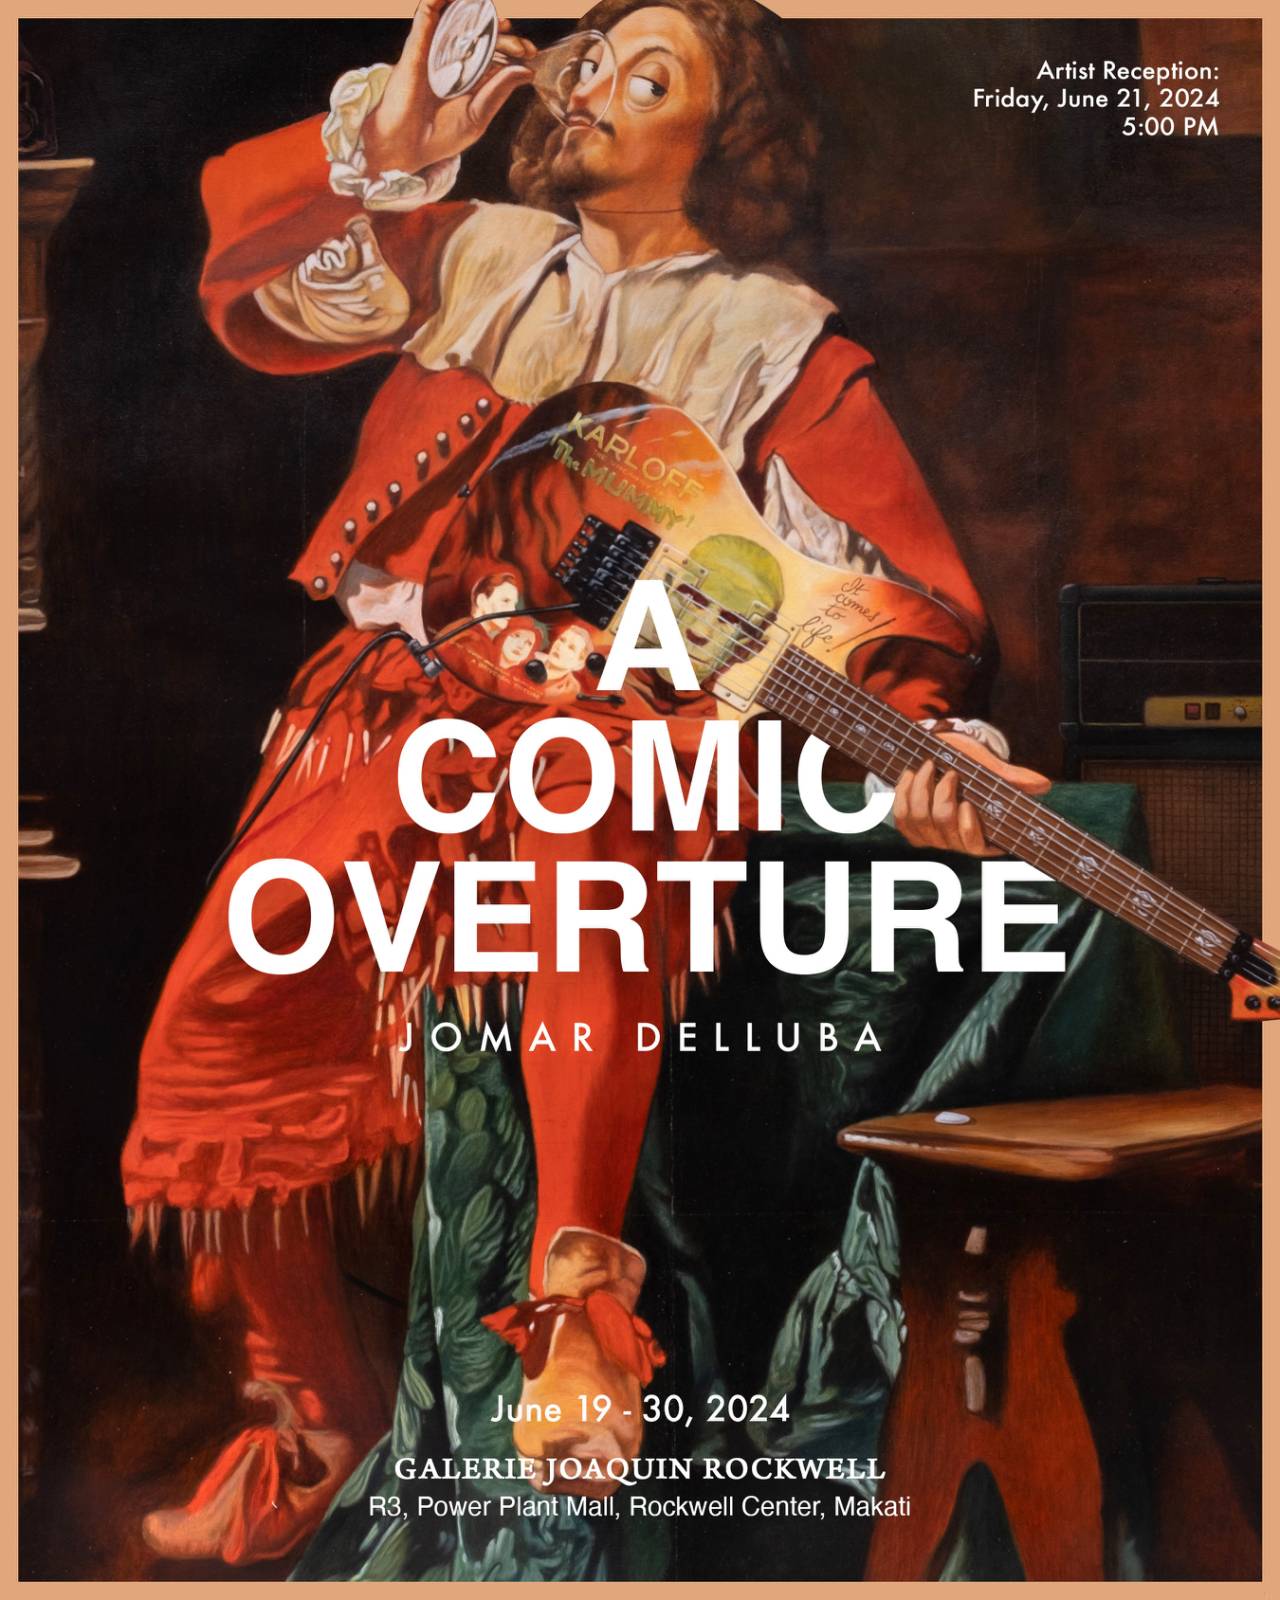 A Comic Overture, Jomar Delluba